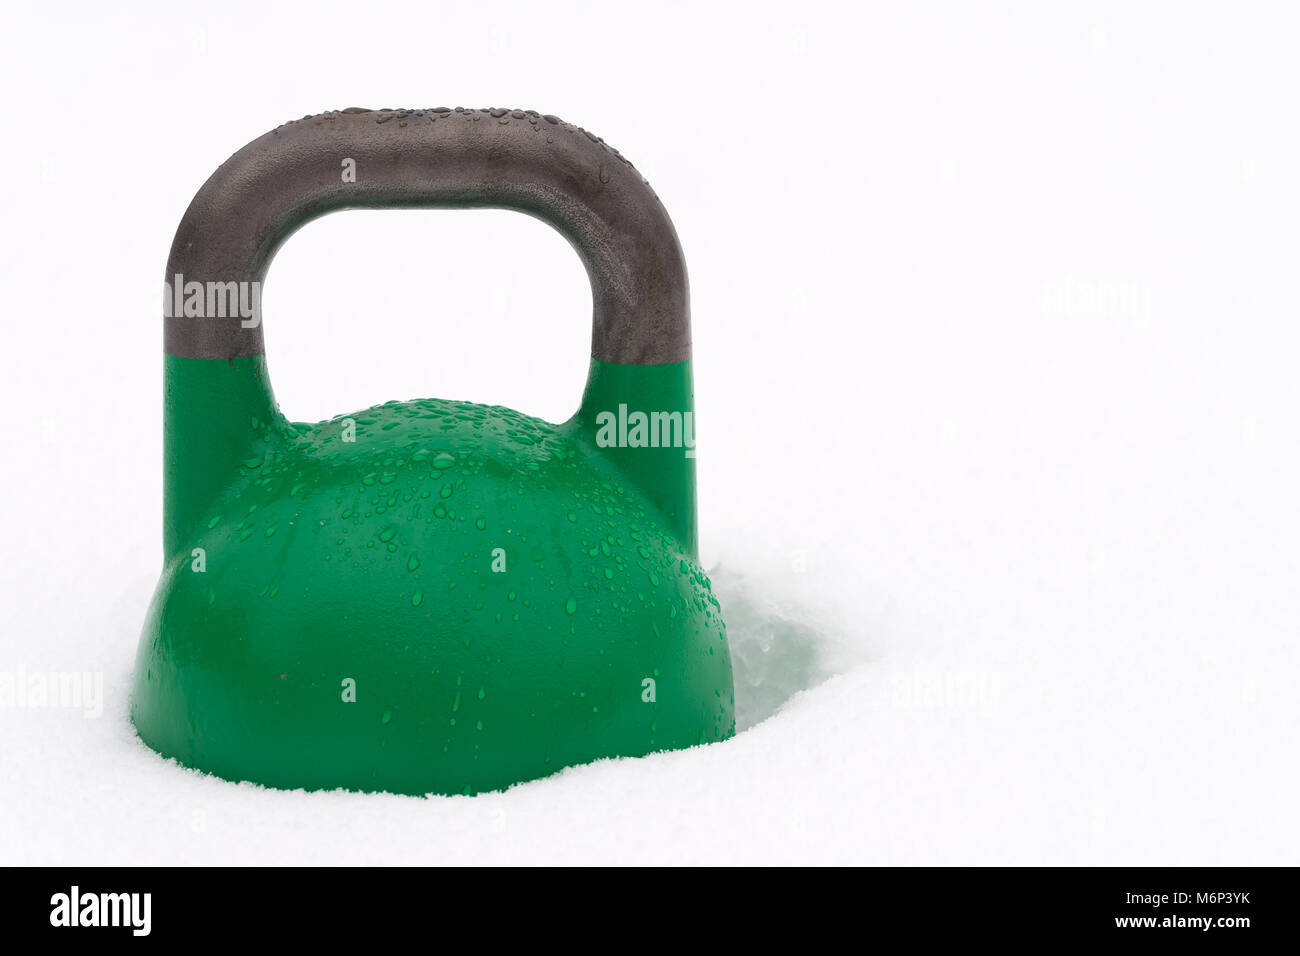 Poids kettlebell formation verte couverte de gouttelettes d'eau à l'extérieur dans la neige. Copie potentiel espace à droite de kettlebell. Banque D'Images